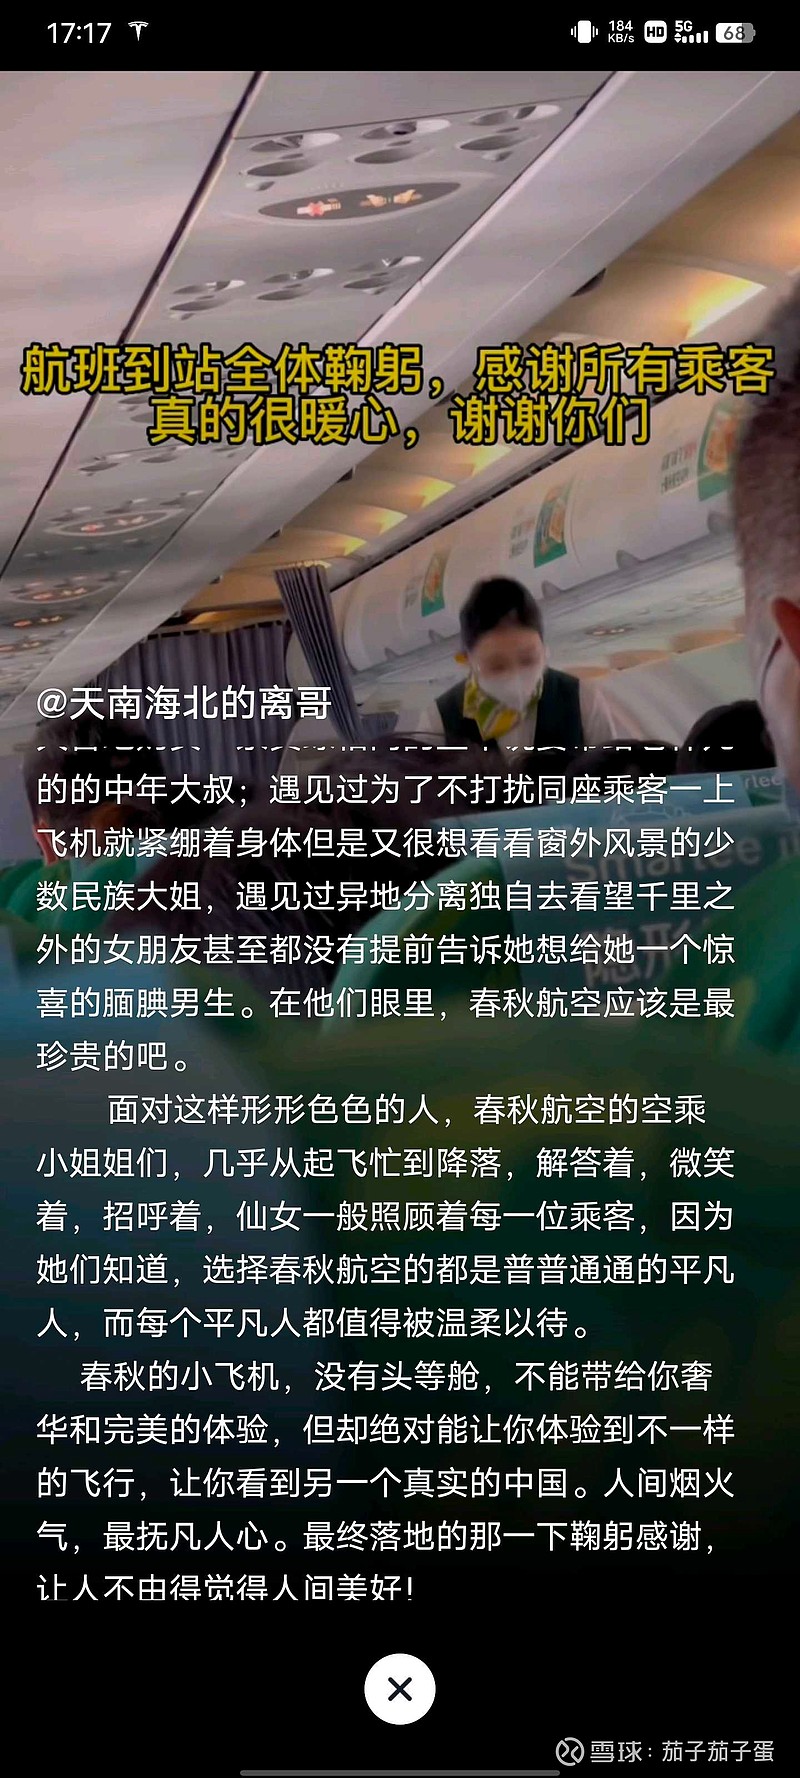 中国还有十亿人没坐过飞机，应该